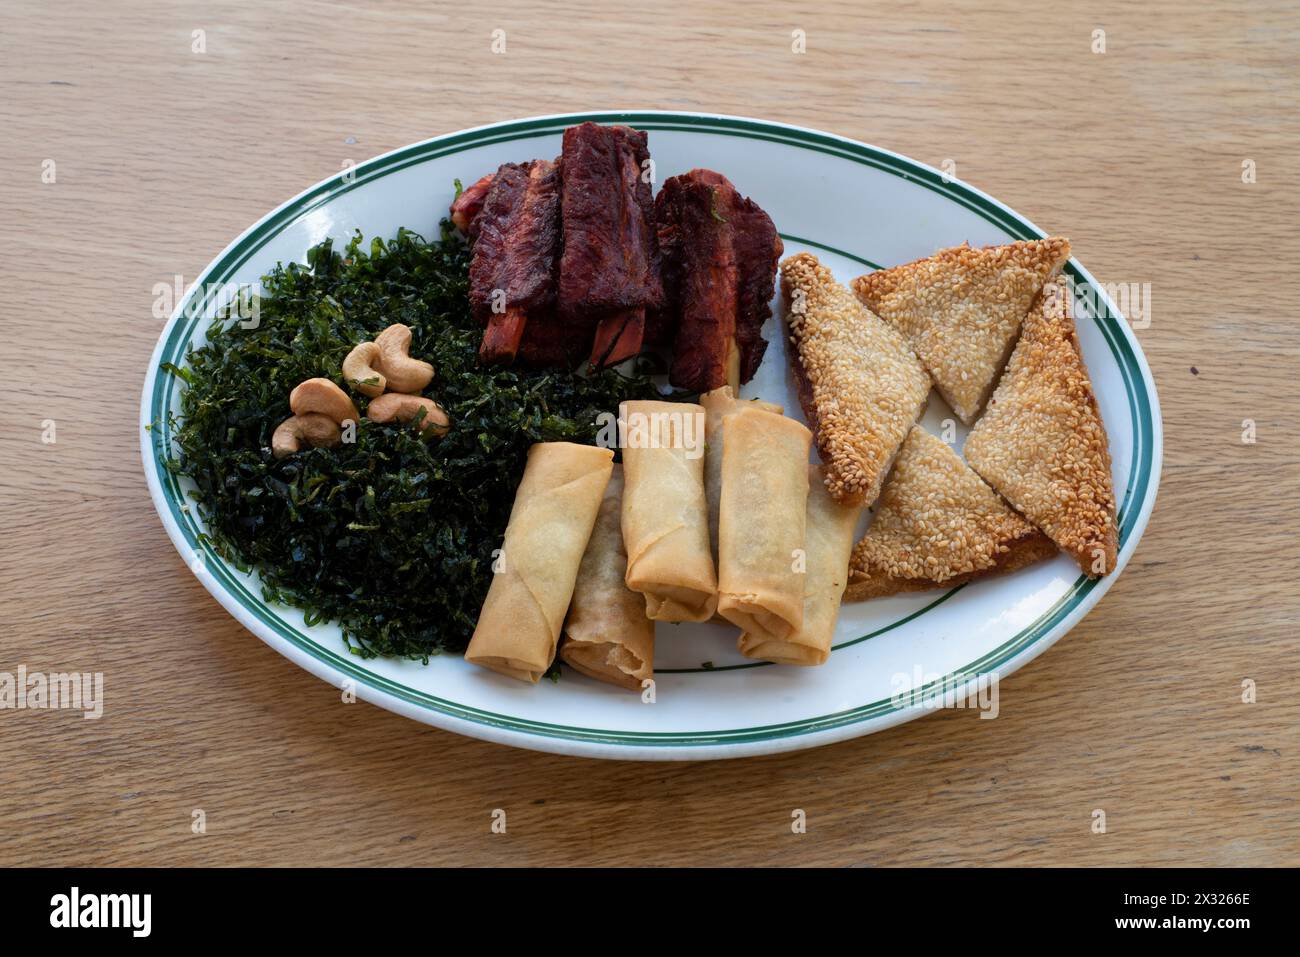 Cuisine chinoise : entrées ou côtés avec rouleaux de printemps, toasts de crevettes, côtes chinoises et algues Banque D'Images